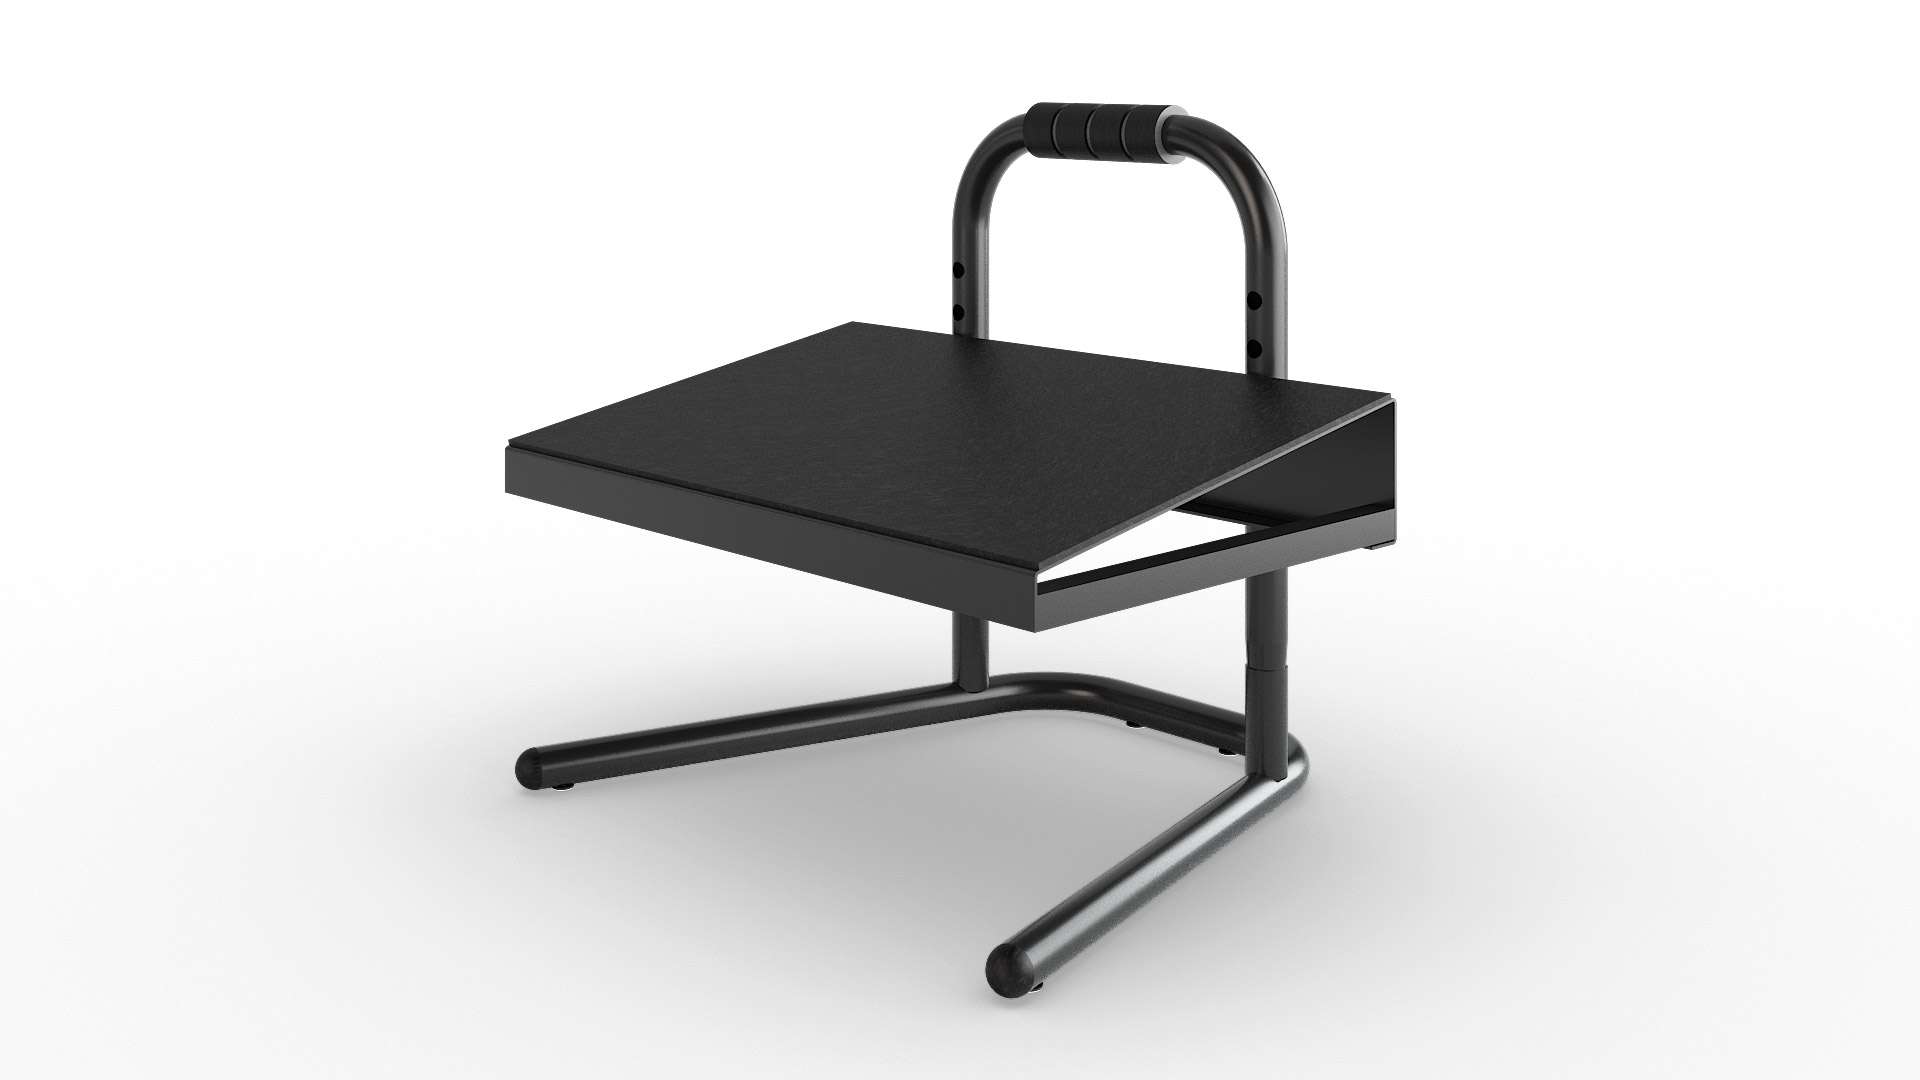 FRL2016 Industrial Height Adjustable Footrest